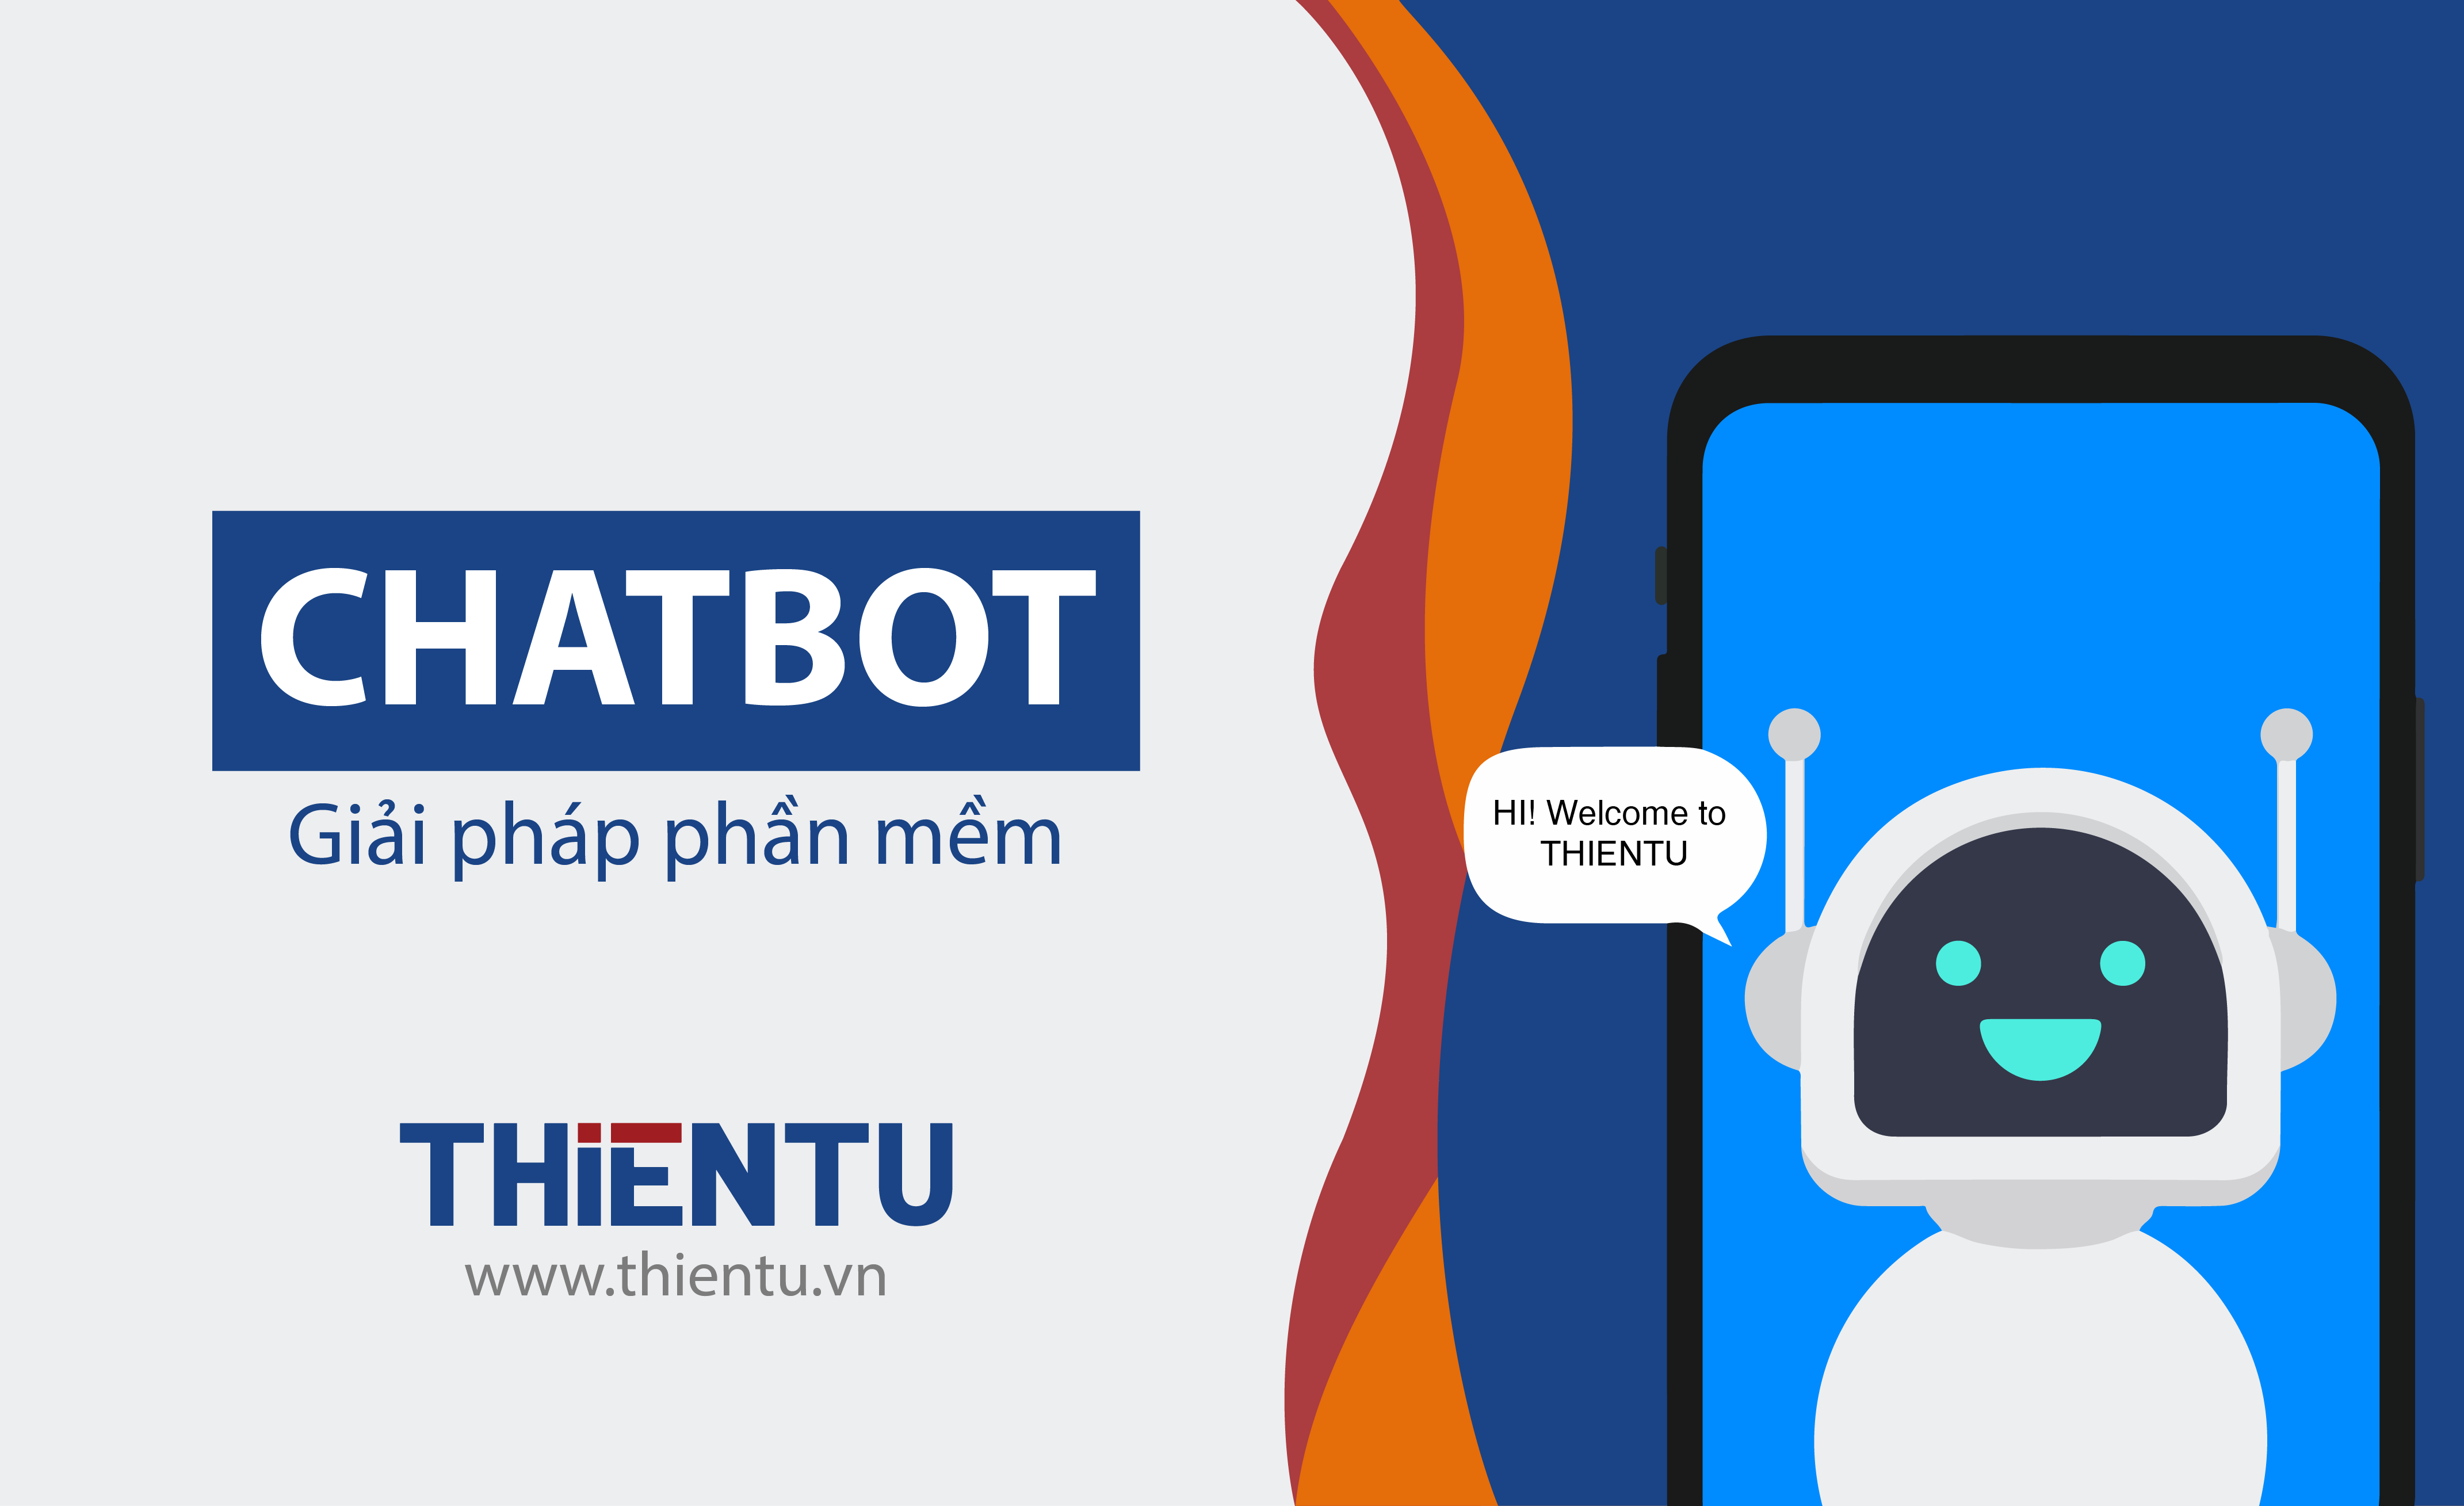 Chatbot là gì? | Giải pháp phần mềm Chatbot | Dịch vụ khách hàng